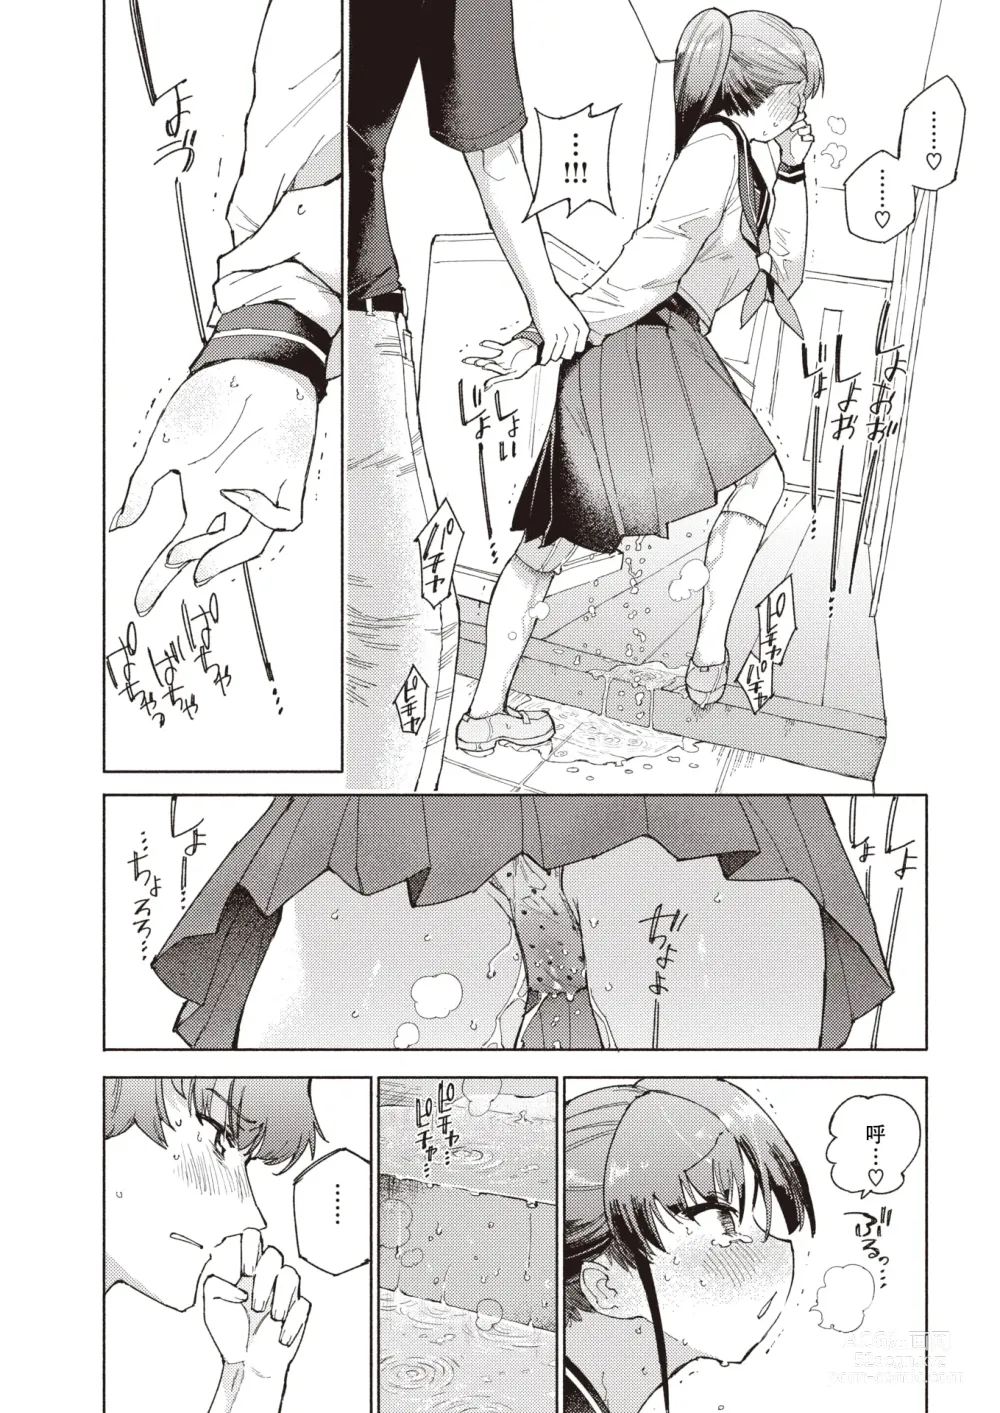 Page 4 of manga 标记